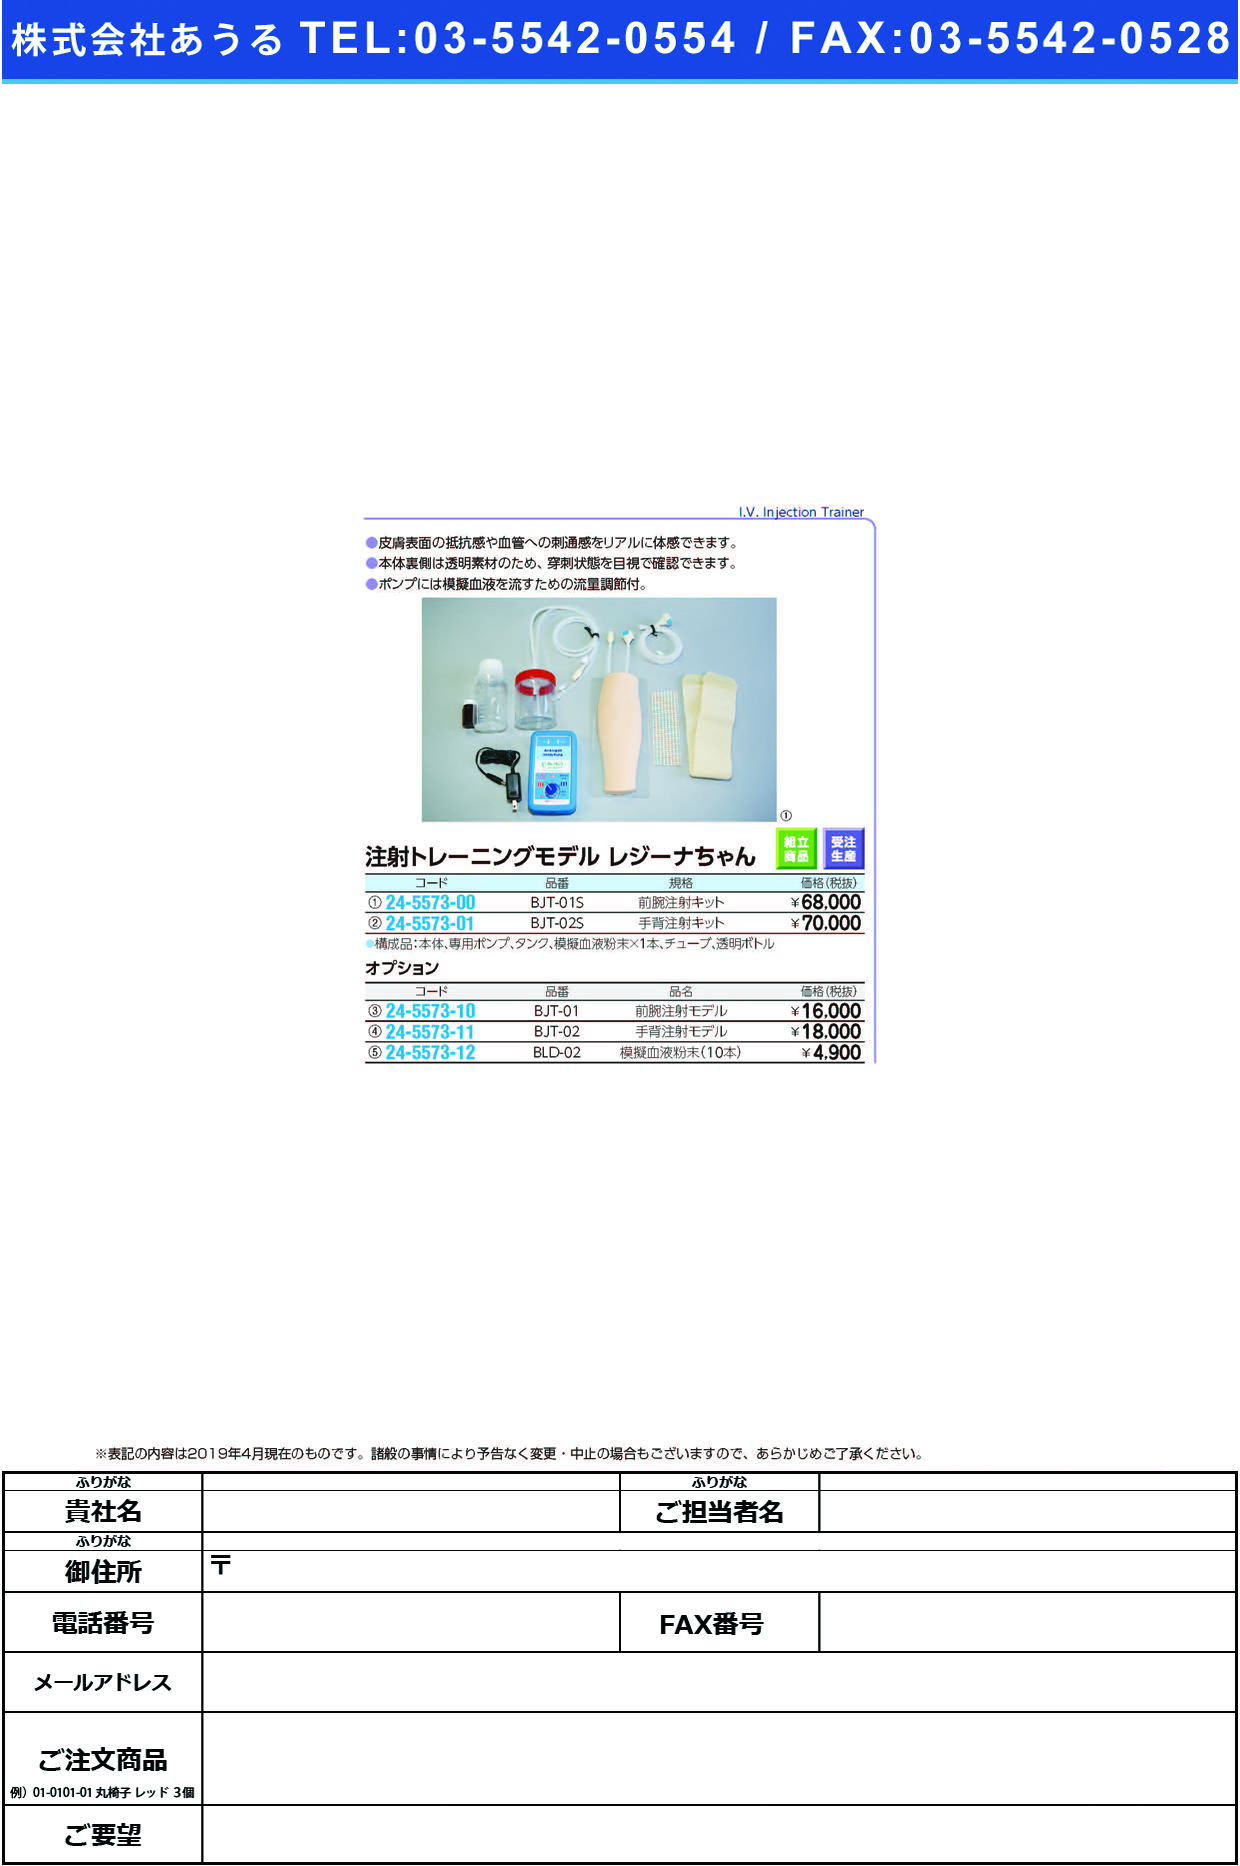 (24-5573-11)手背注射トレーニングモデル BJT-02 ｼｭﾊｲﾁｭｳｼｬﾄﾚｰﾆﾝｸﾞﾓﾃﾞﾙ【1個単位】【2019年カタログ商品】